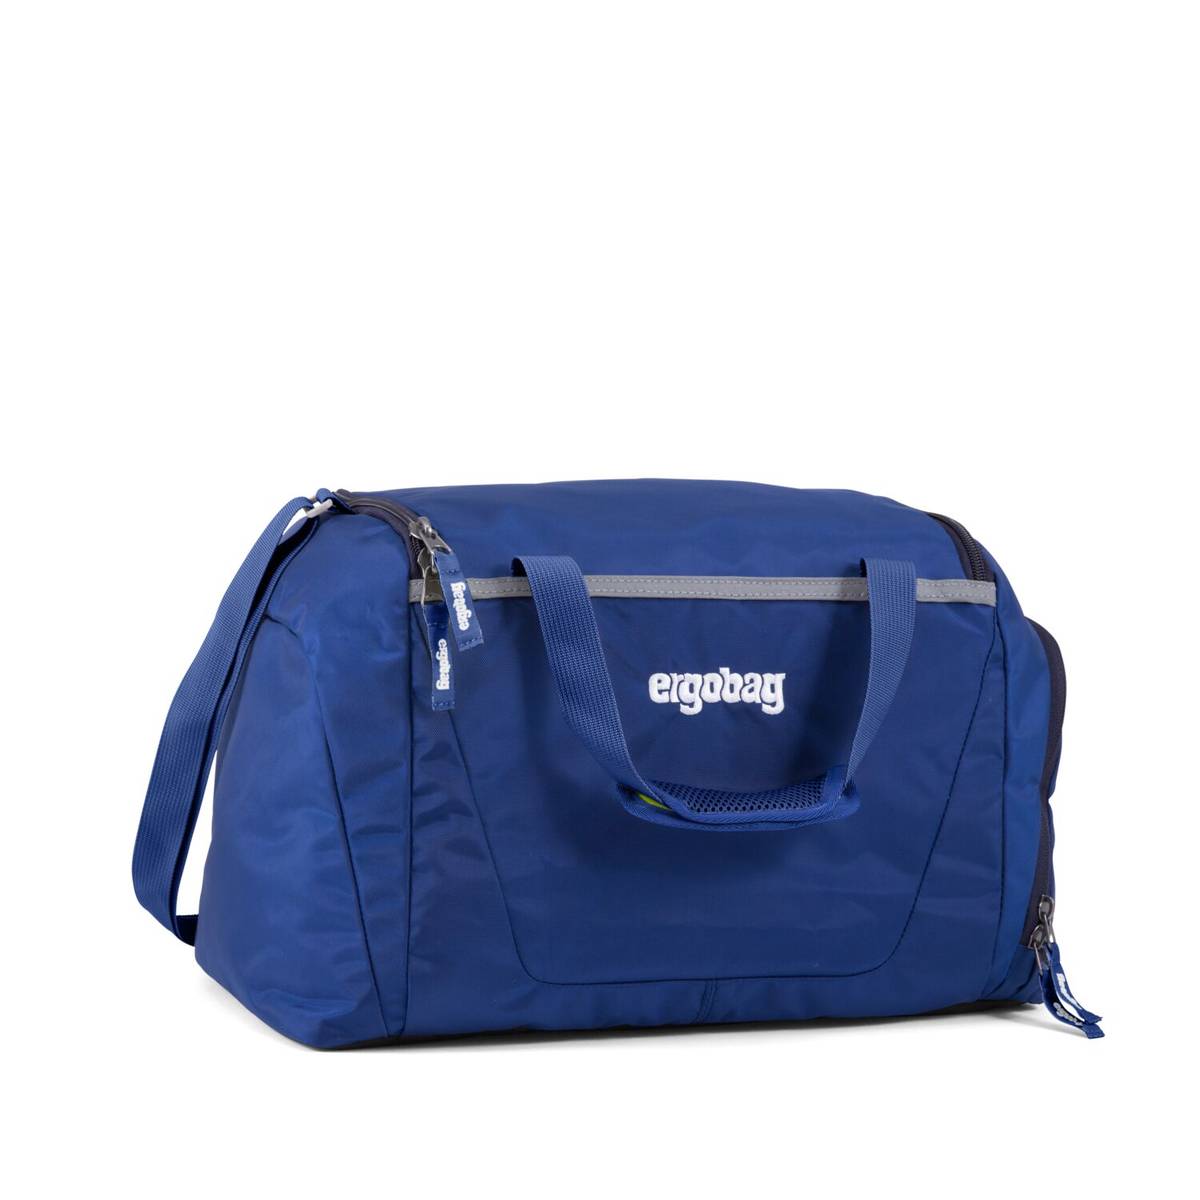 Ergobag Sporttasche BlaulichtBär Frontansicht